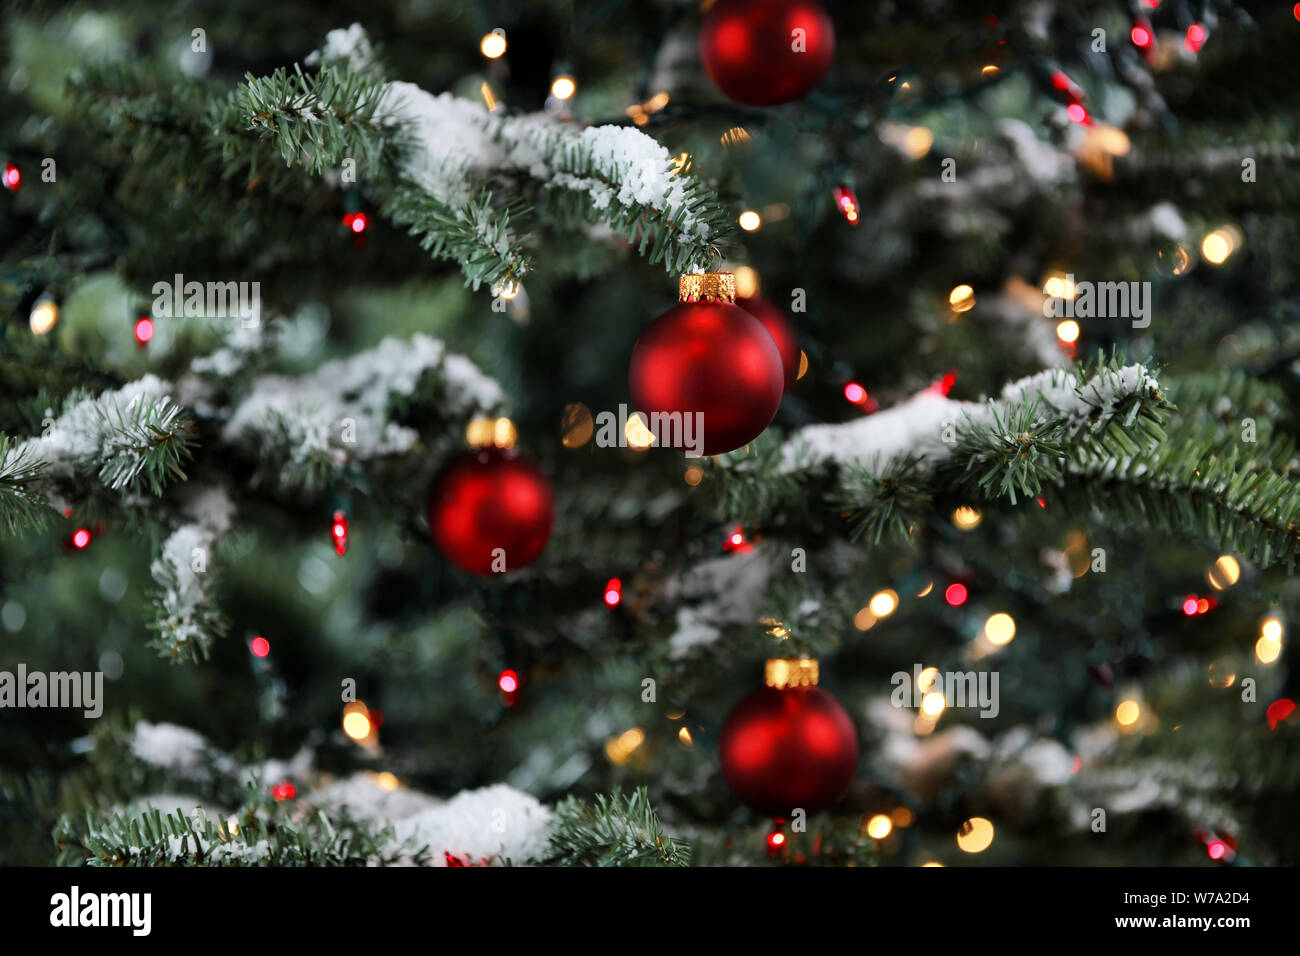 Arbre de Noël lumineux décoré de la neige et des ornements de red ball Banque D'Images